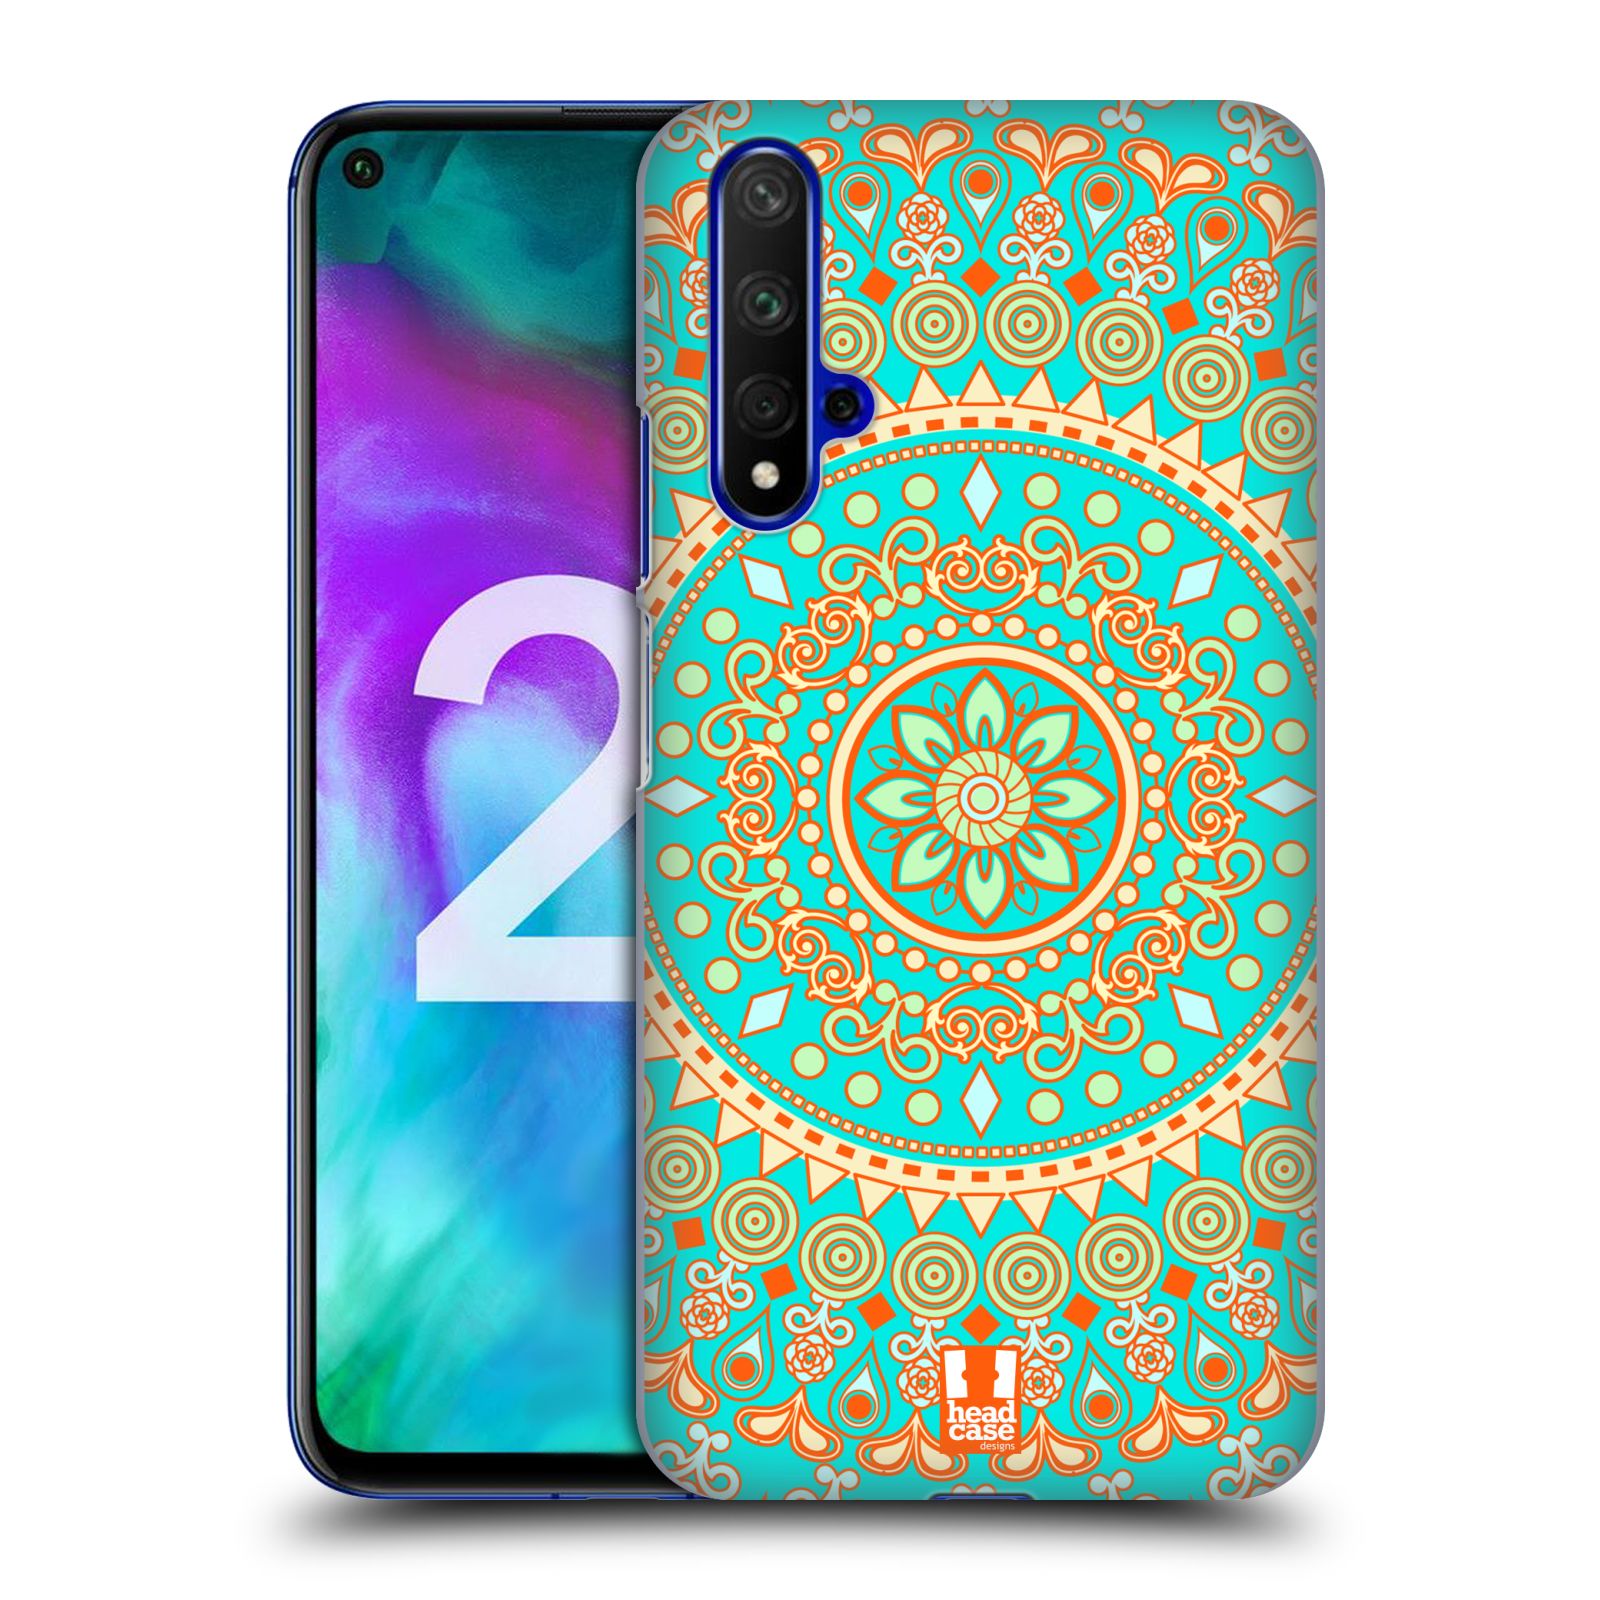 Pouzdro na mobil Honor 20 - HEAD CASE - vzor Indie Mandala slunce barevný motiv TYRKYSOVÁ, ZELENÁ